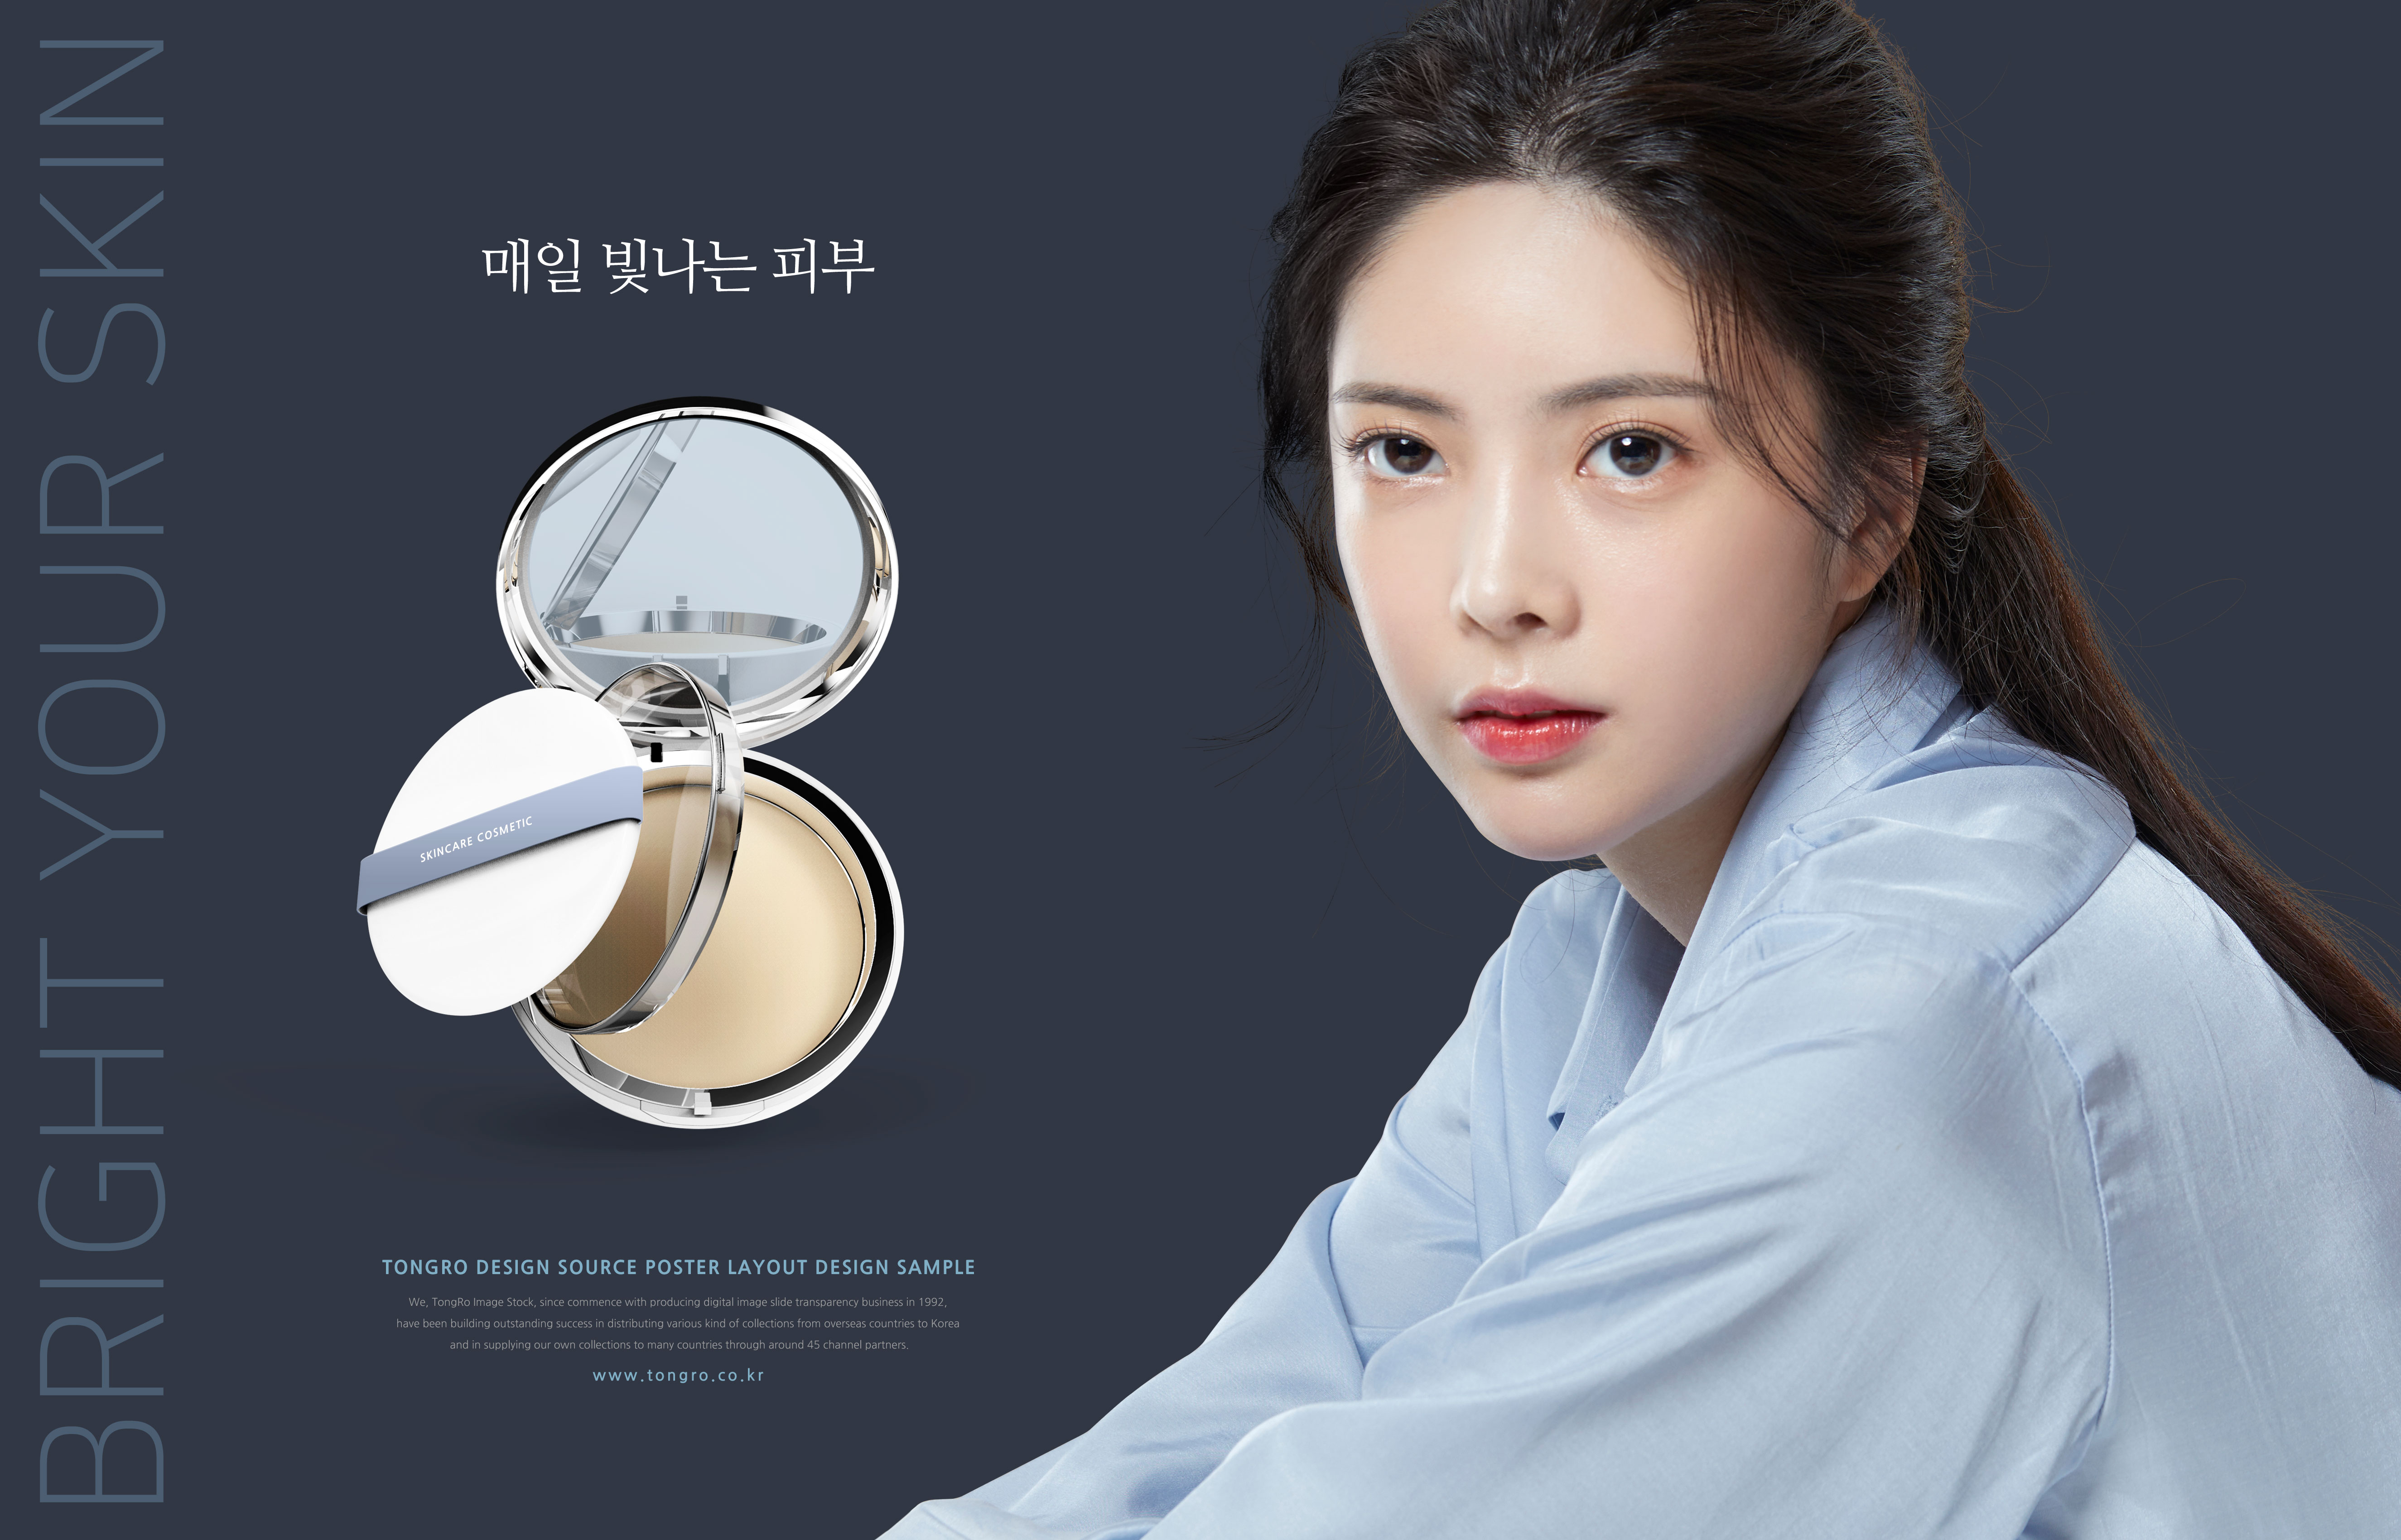 化妆品广告促销活动电商海报模板套装插图(5)